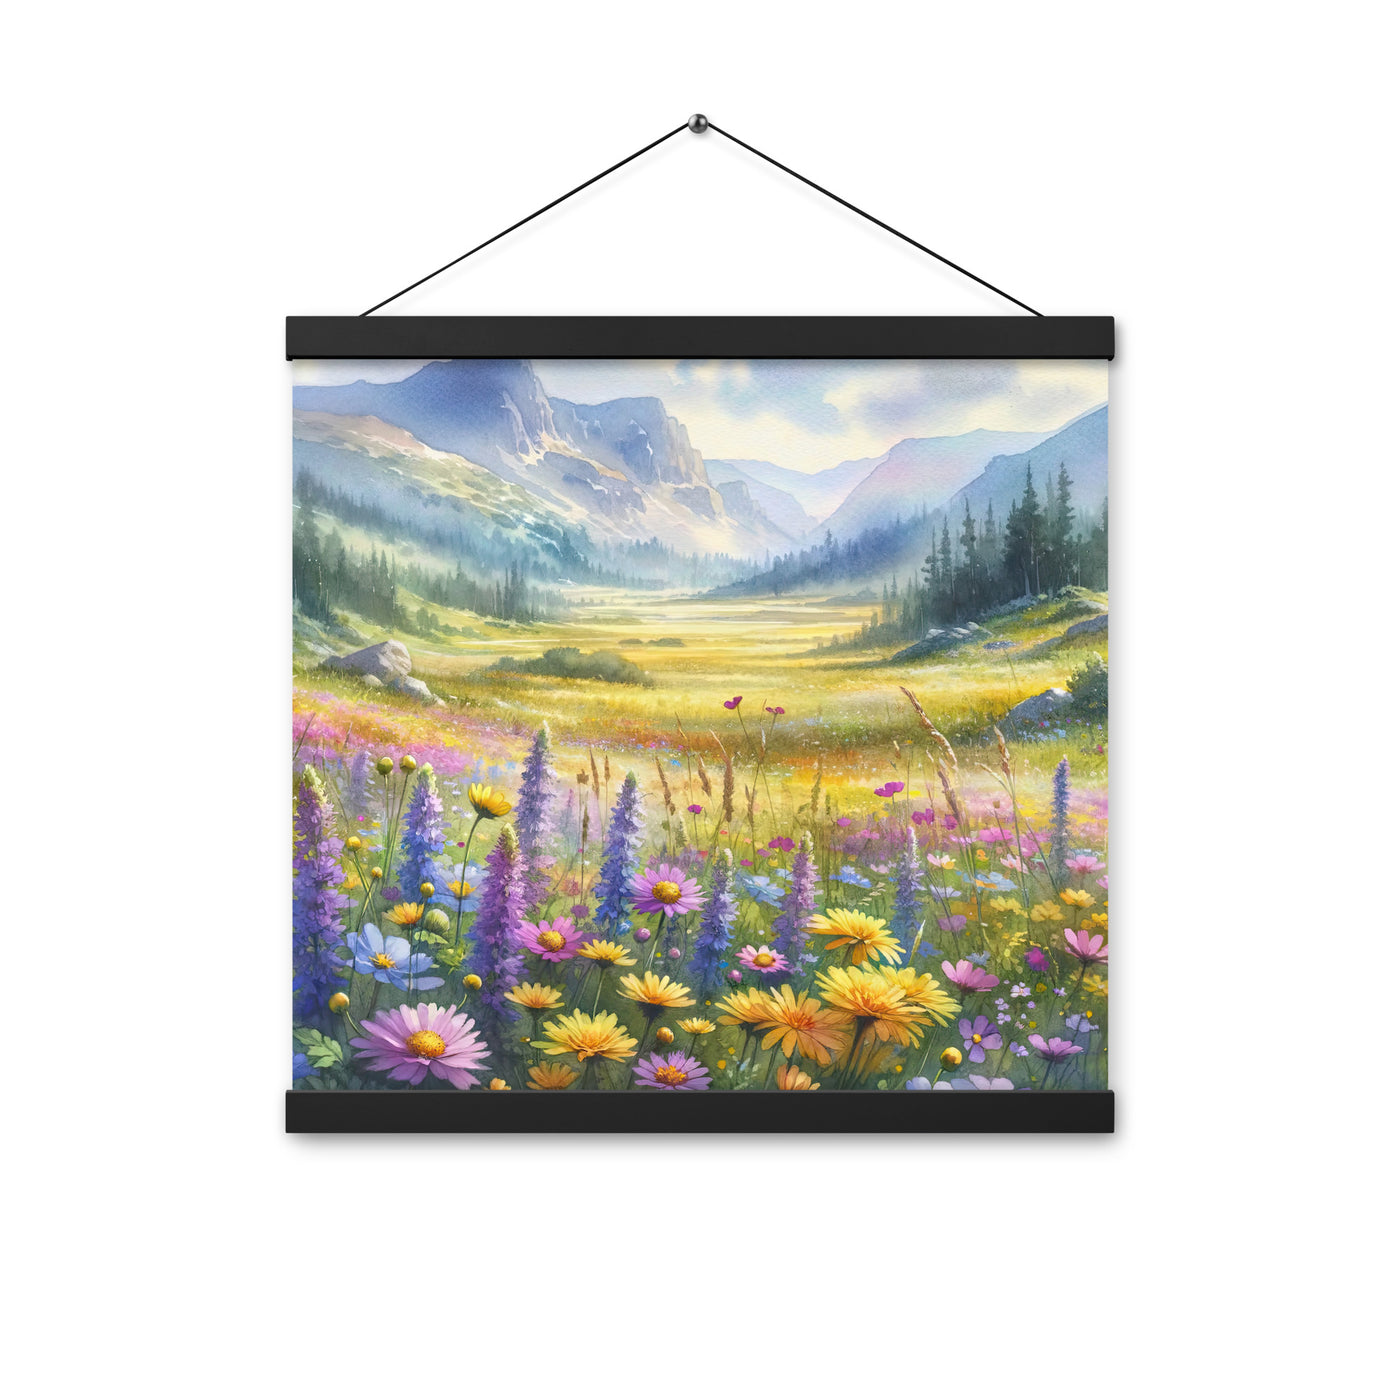 Aquarell einer Almwiese in Ruhe, Wildblumenteppich in Gelb, Lila, Rosa - Premium Poster mit Aufhängung berge xxx yyy zzz 40.6 x 40.6 cm